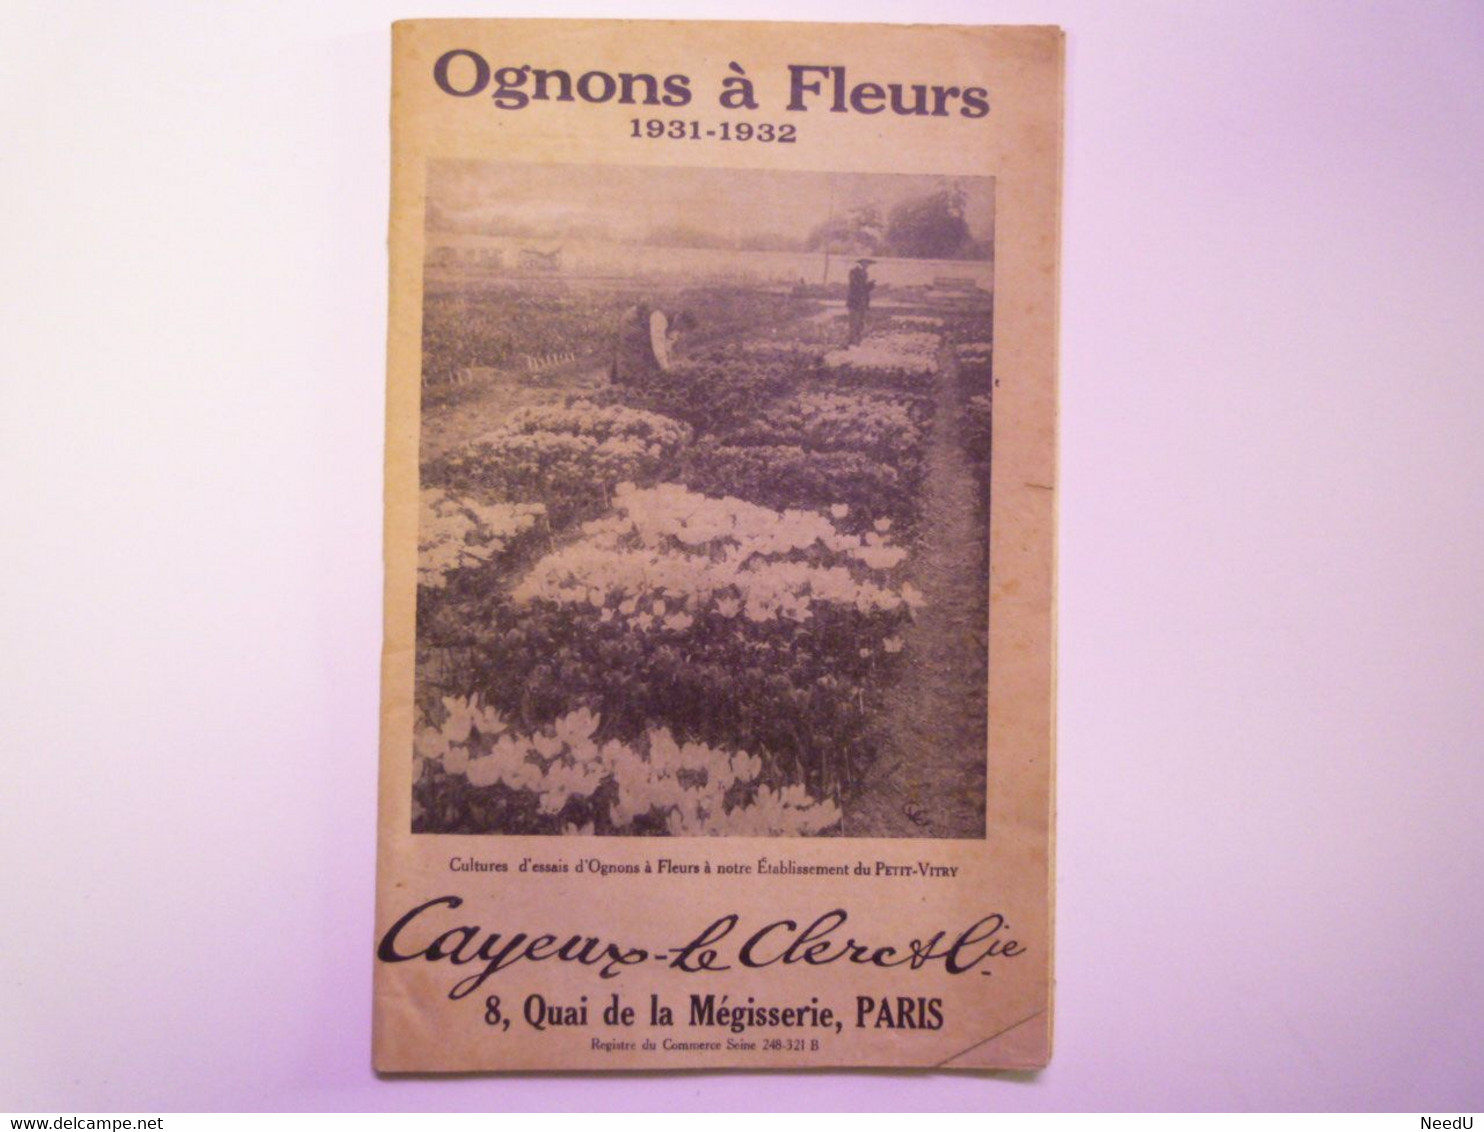 GP 2021 - 78  CATALOGUE  CAYEUX-LE CLERC & Cie  :  OIGNONS à FLEURS  1931 - 1932  XXX - Zonder Classificatie